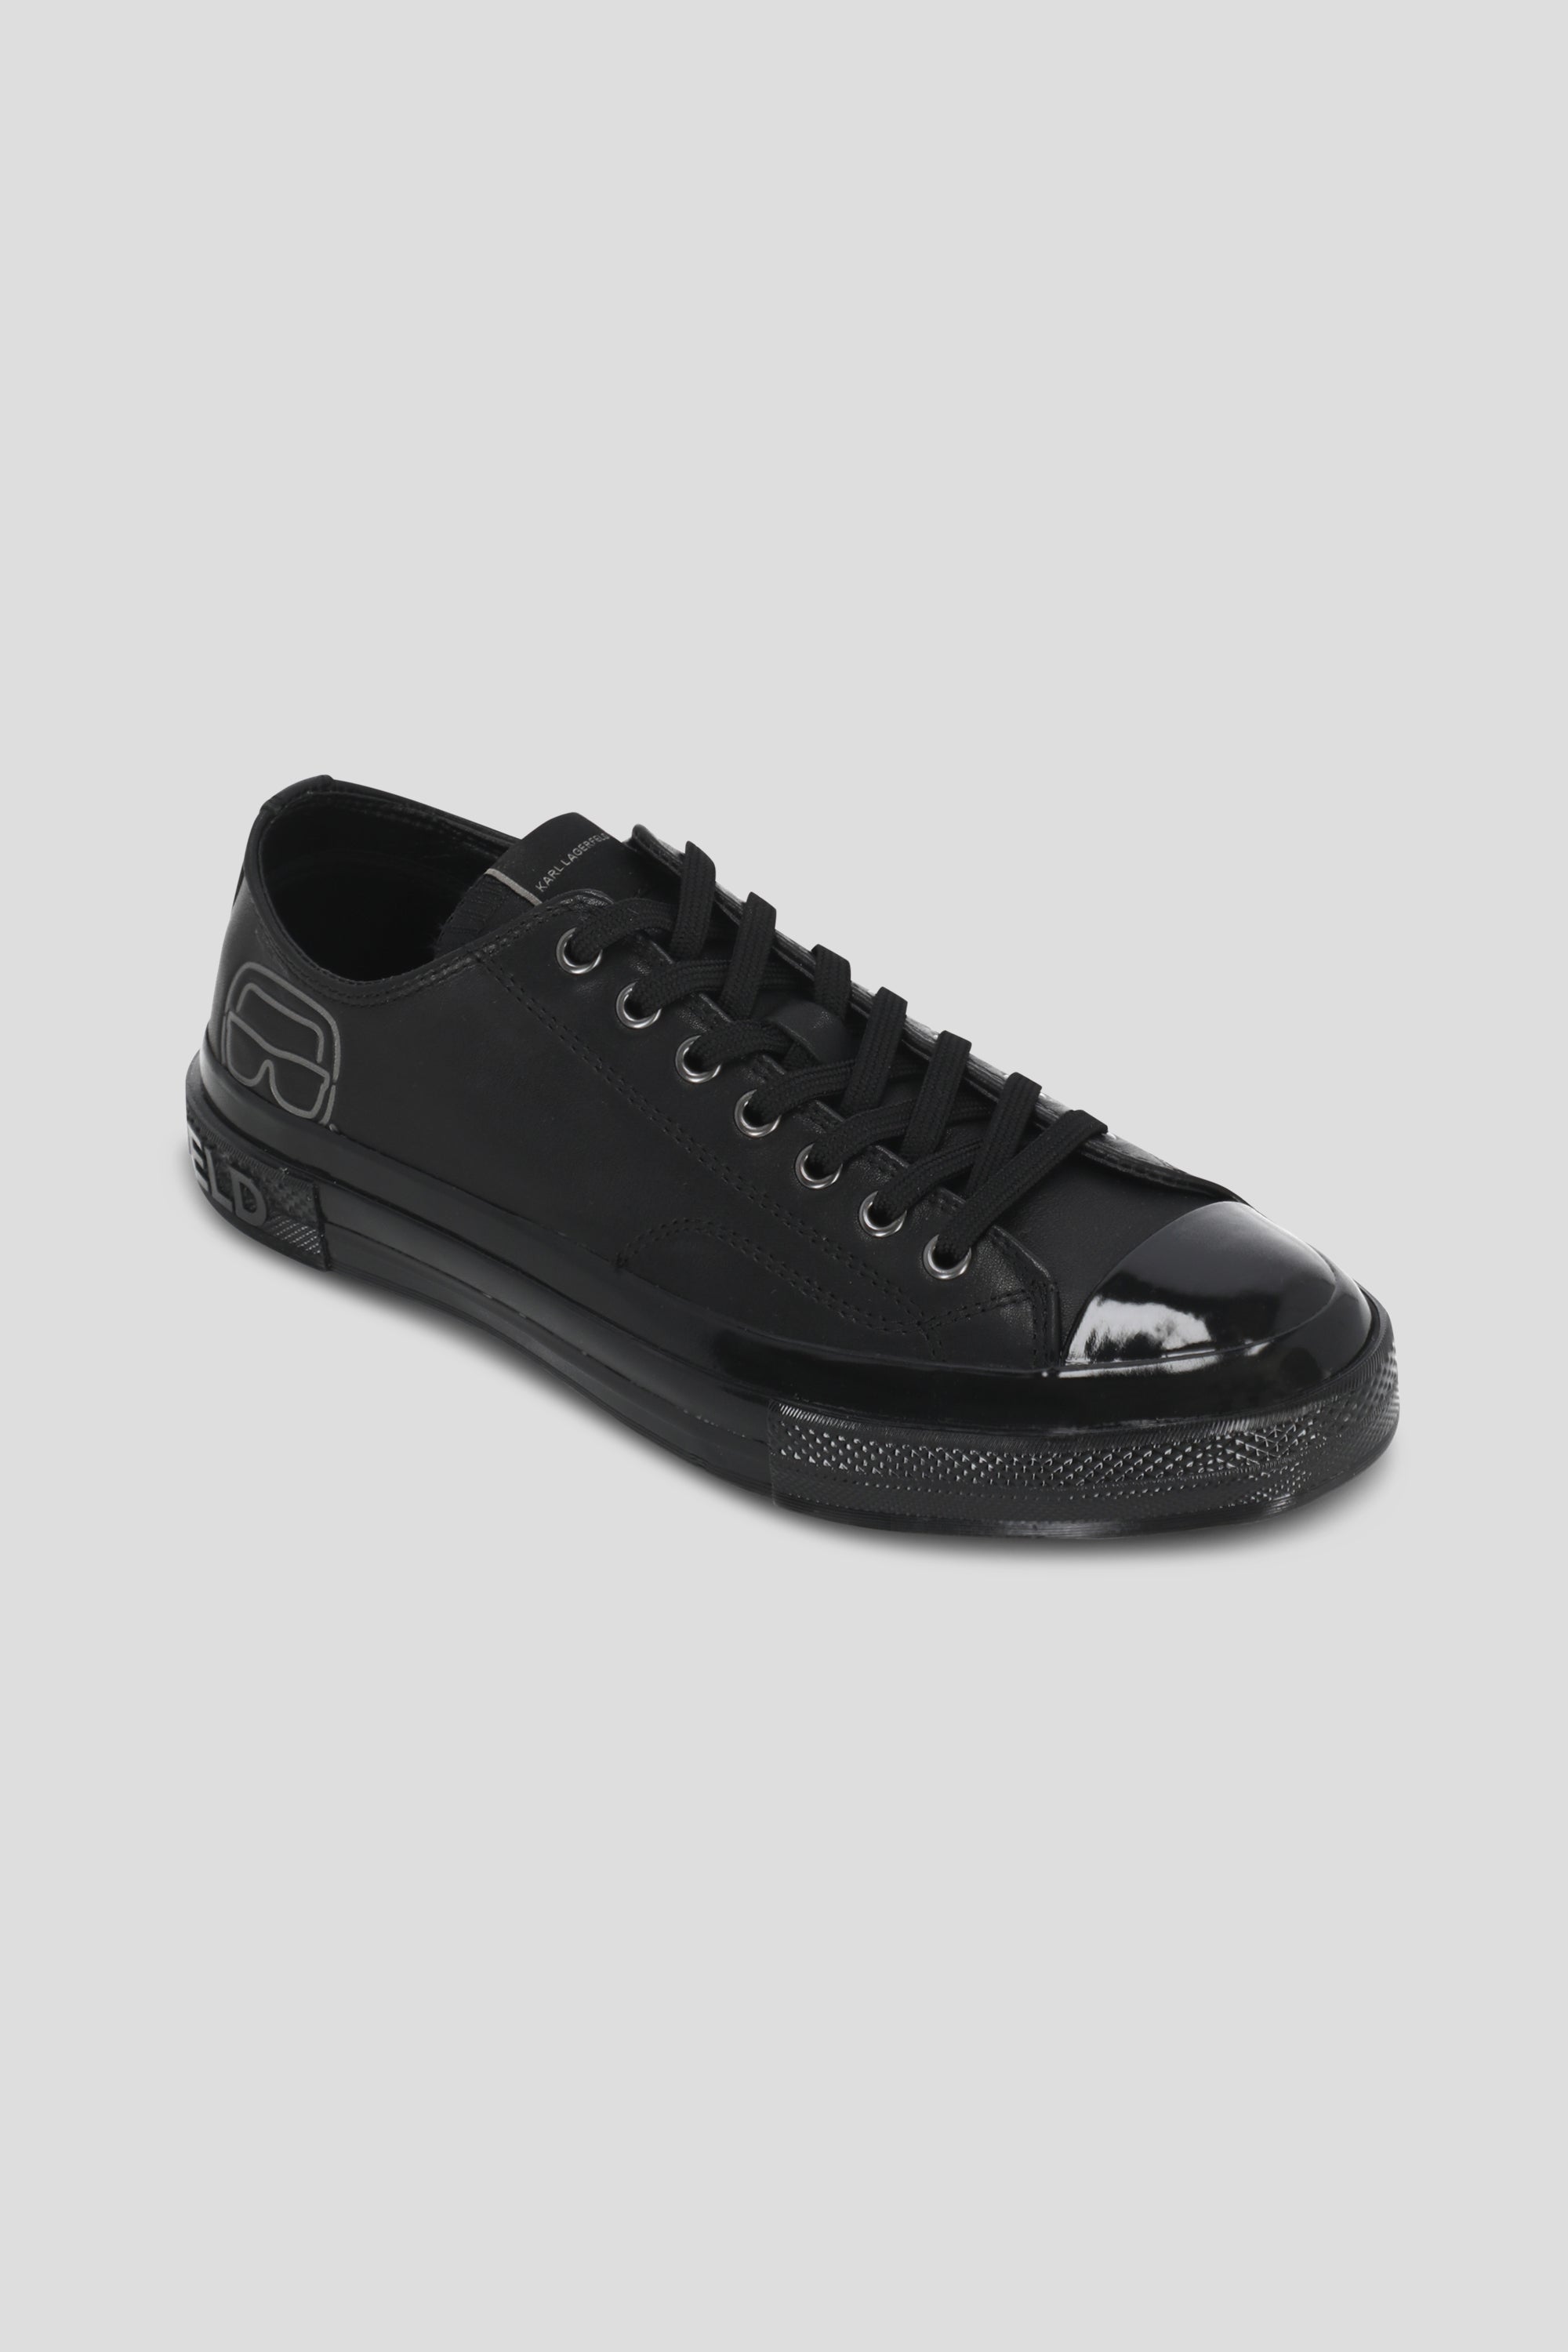 נעלי סניקרס לגברים בצבע שחור